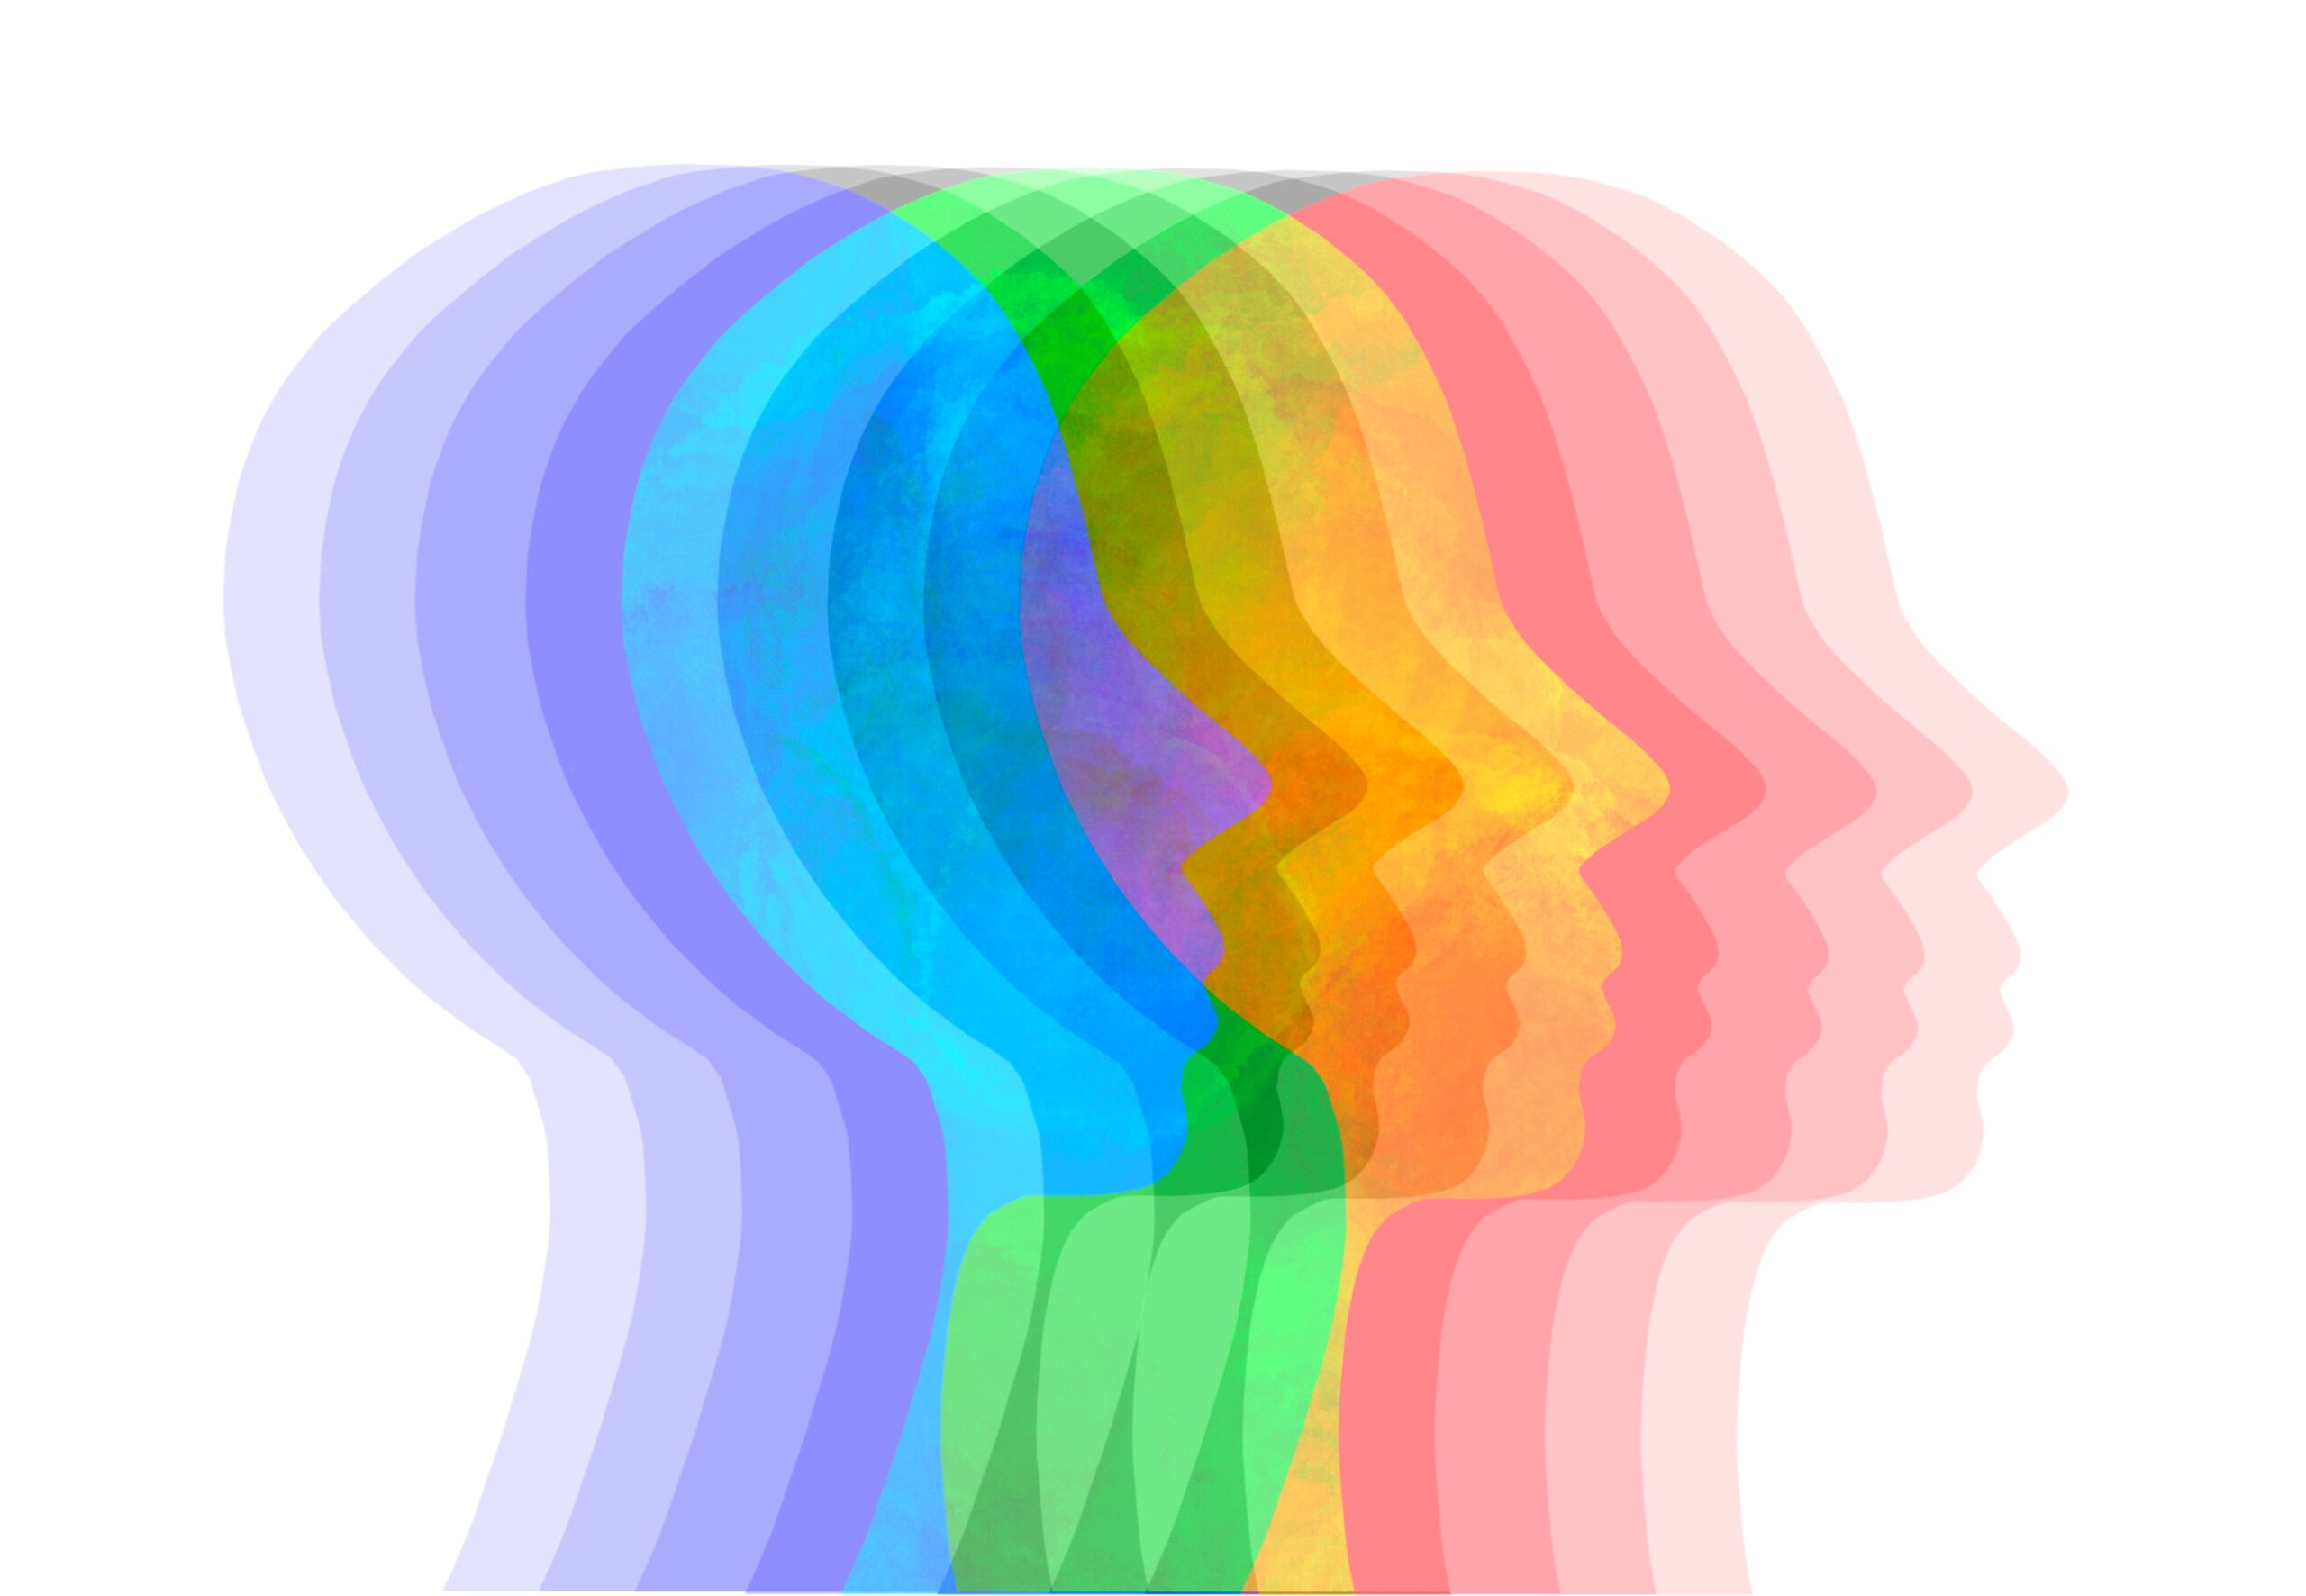 stilisierter Kopf in mehreren Farben